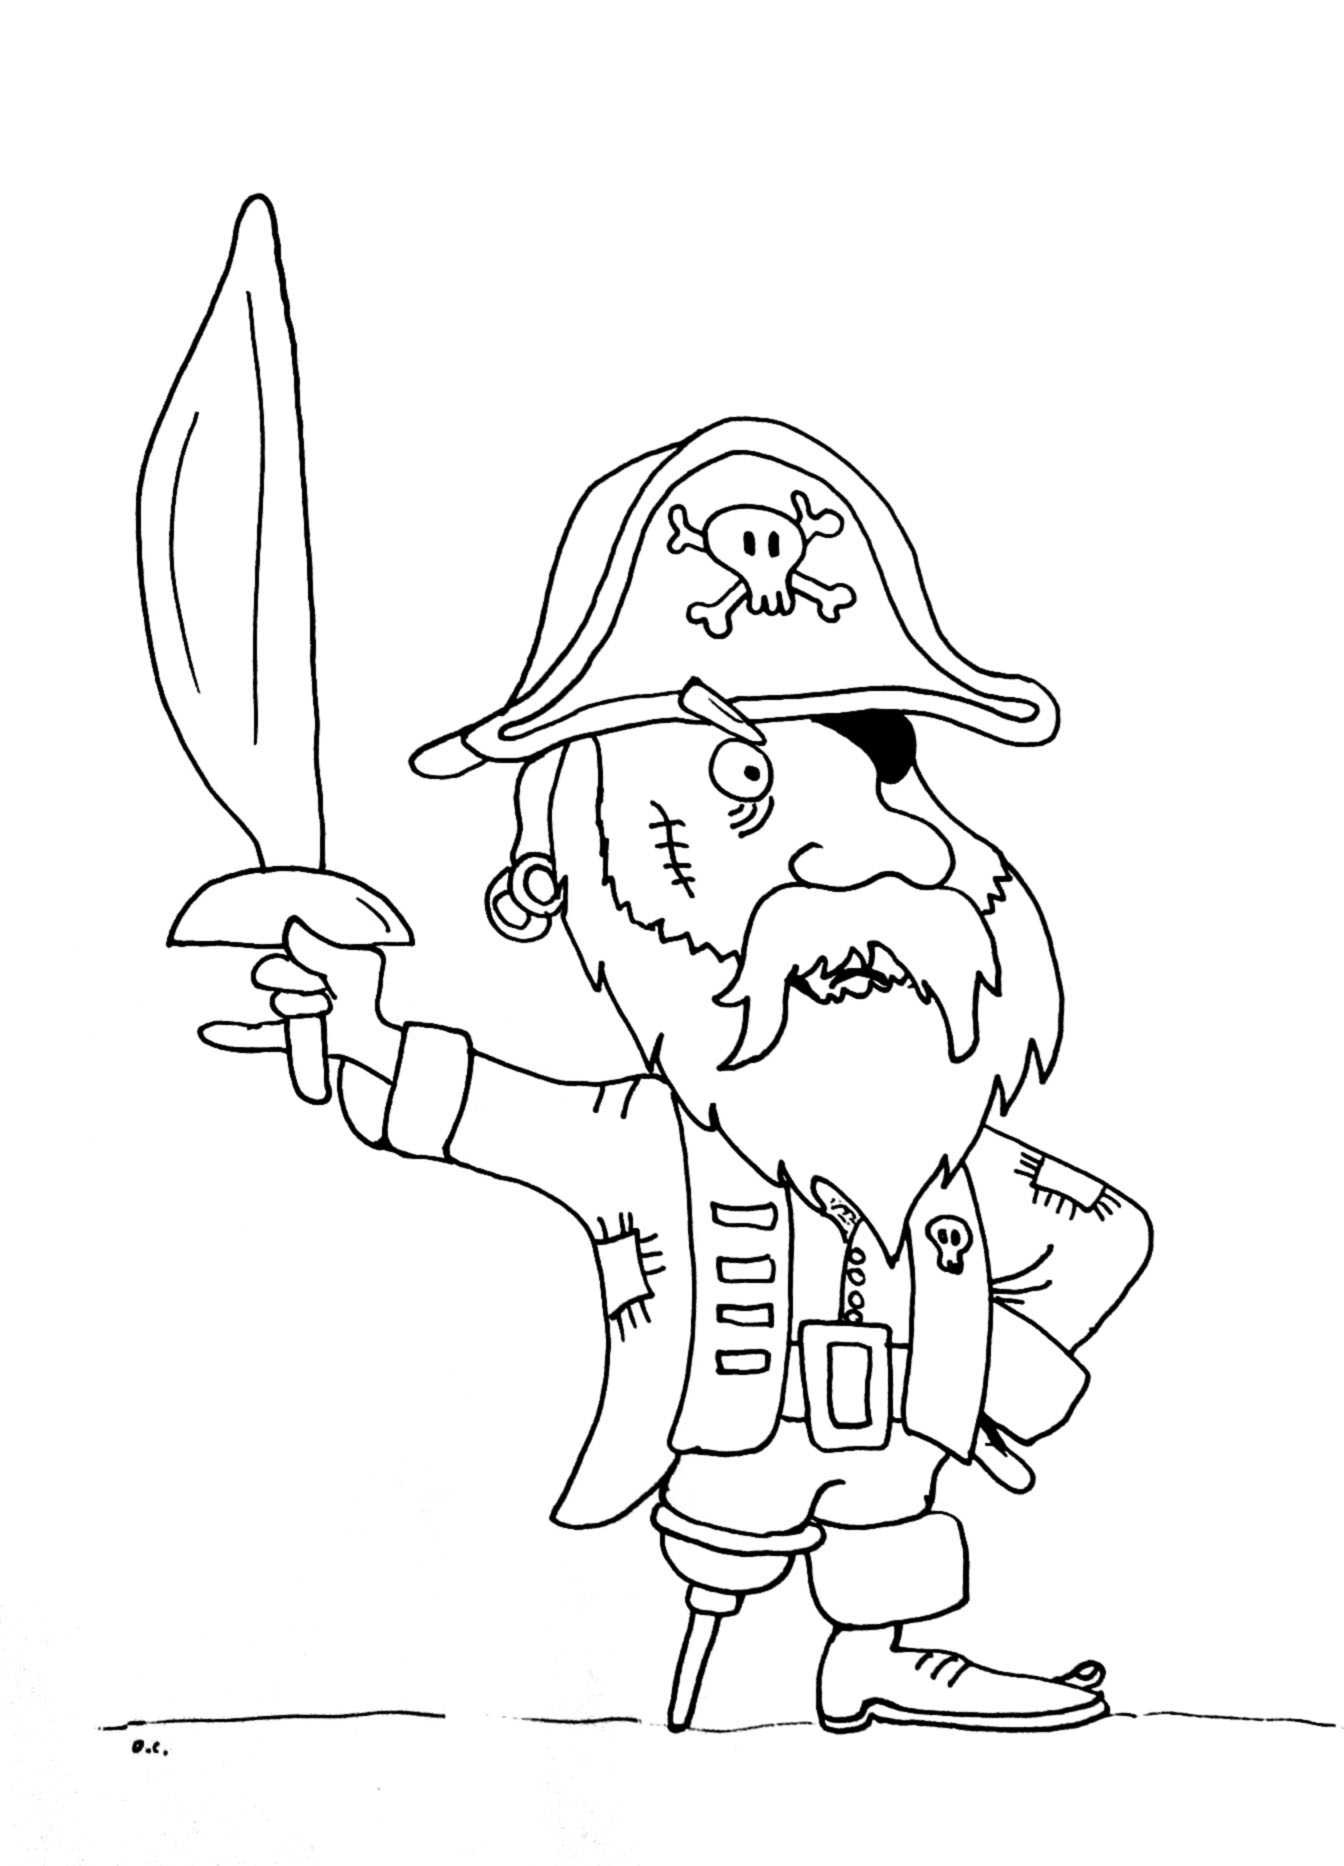 Coloração de um pirata barbudo engraçado com uma perna de madeira!